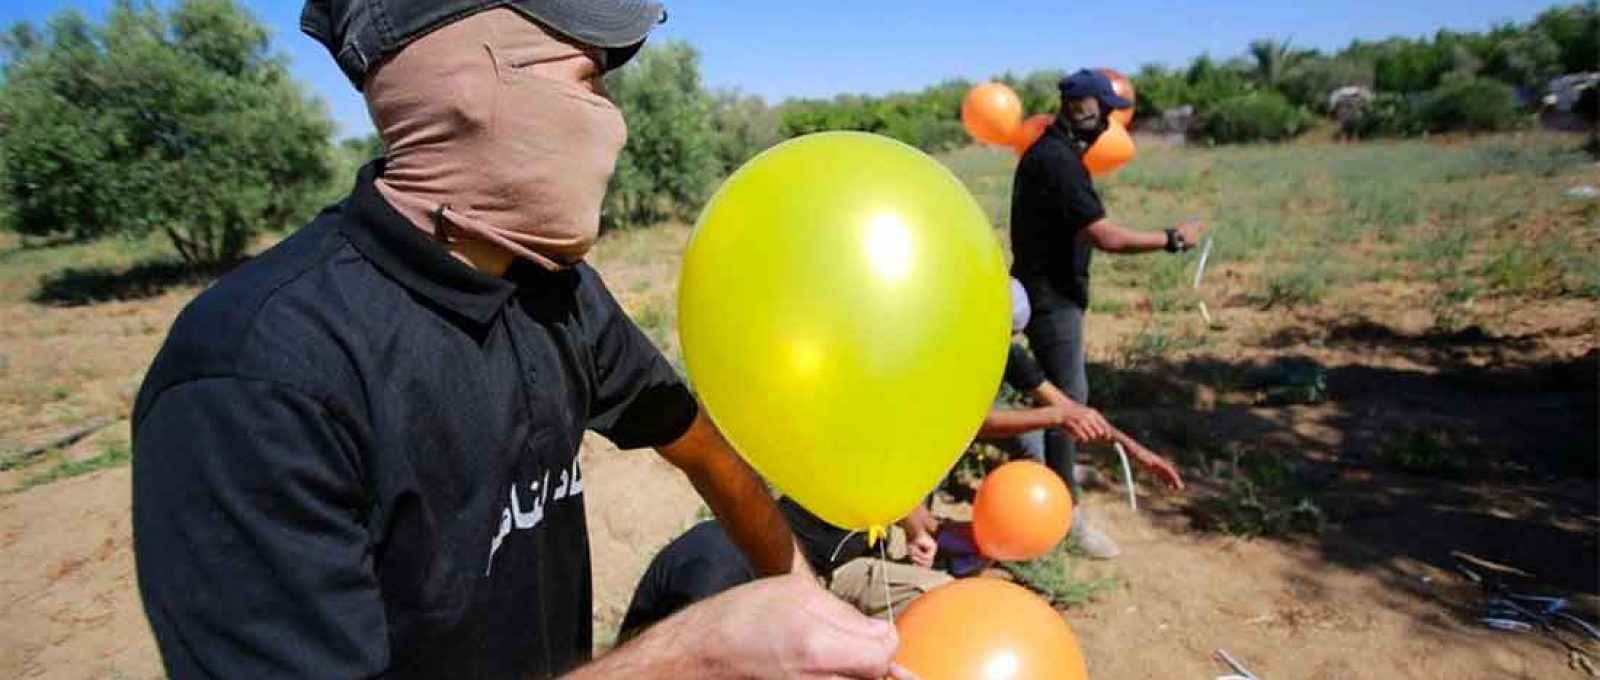 Militantes do Hamas lançaram balões incendiários perto da fronteira de Gaza com Israel (Foto: Getty).